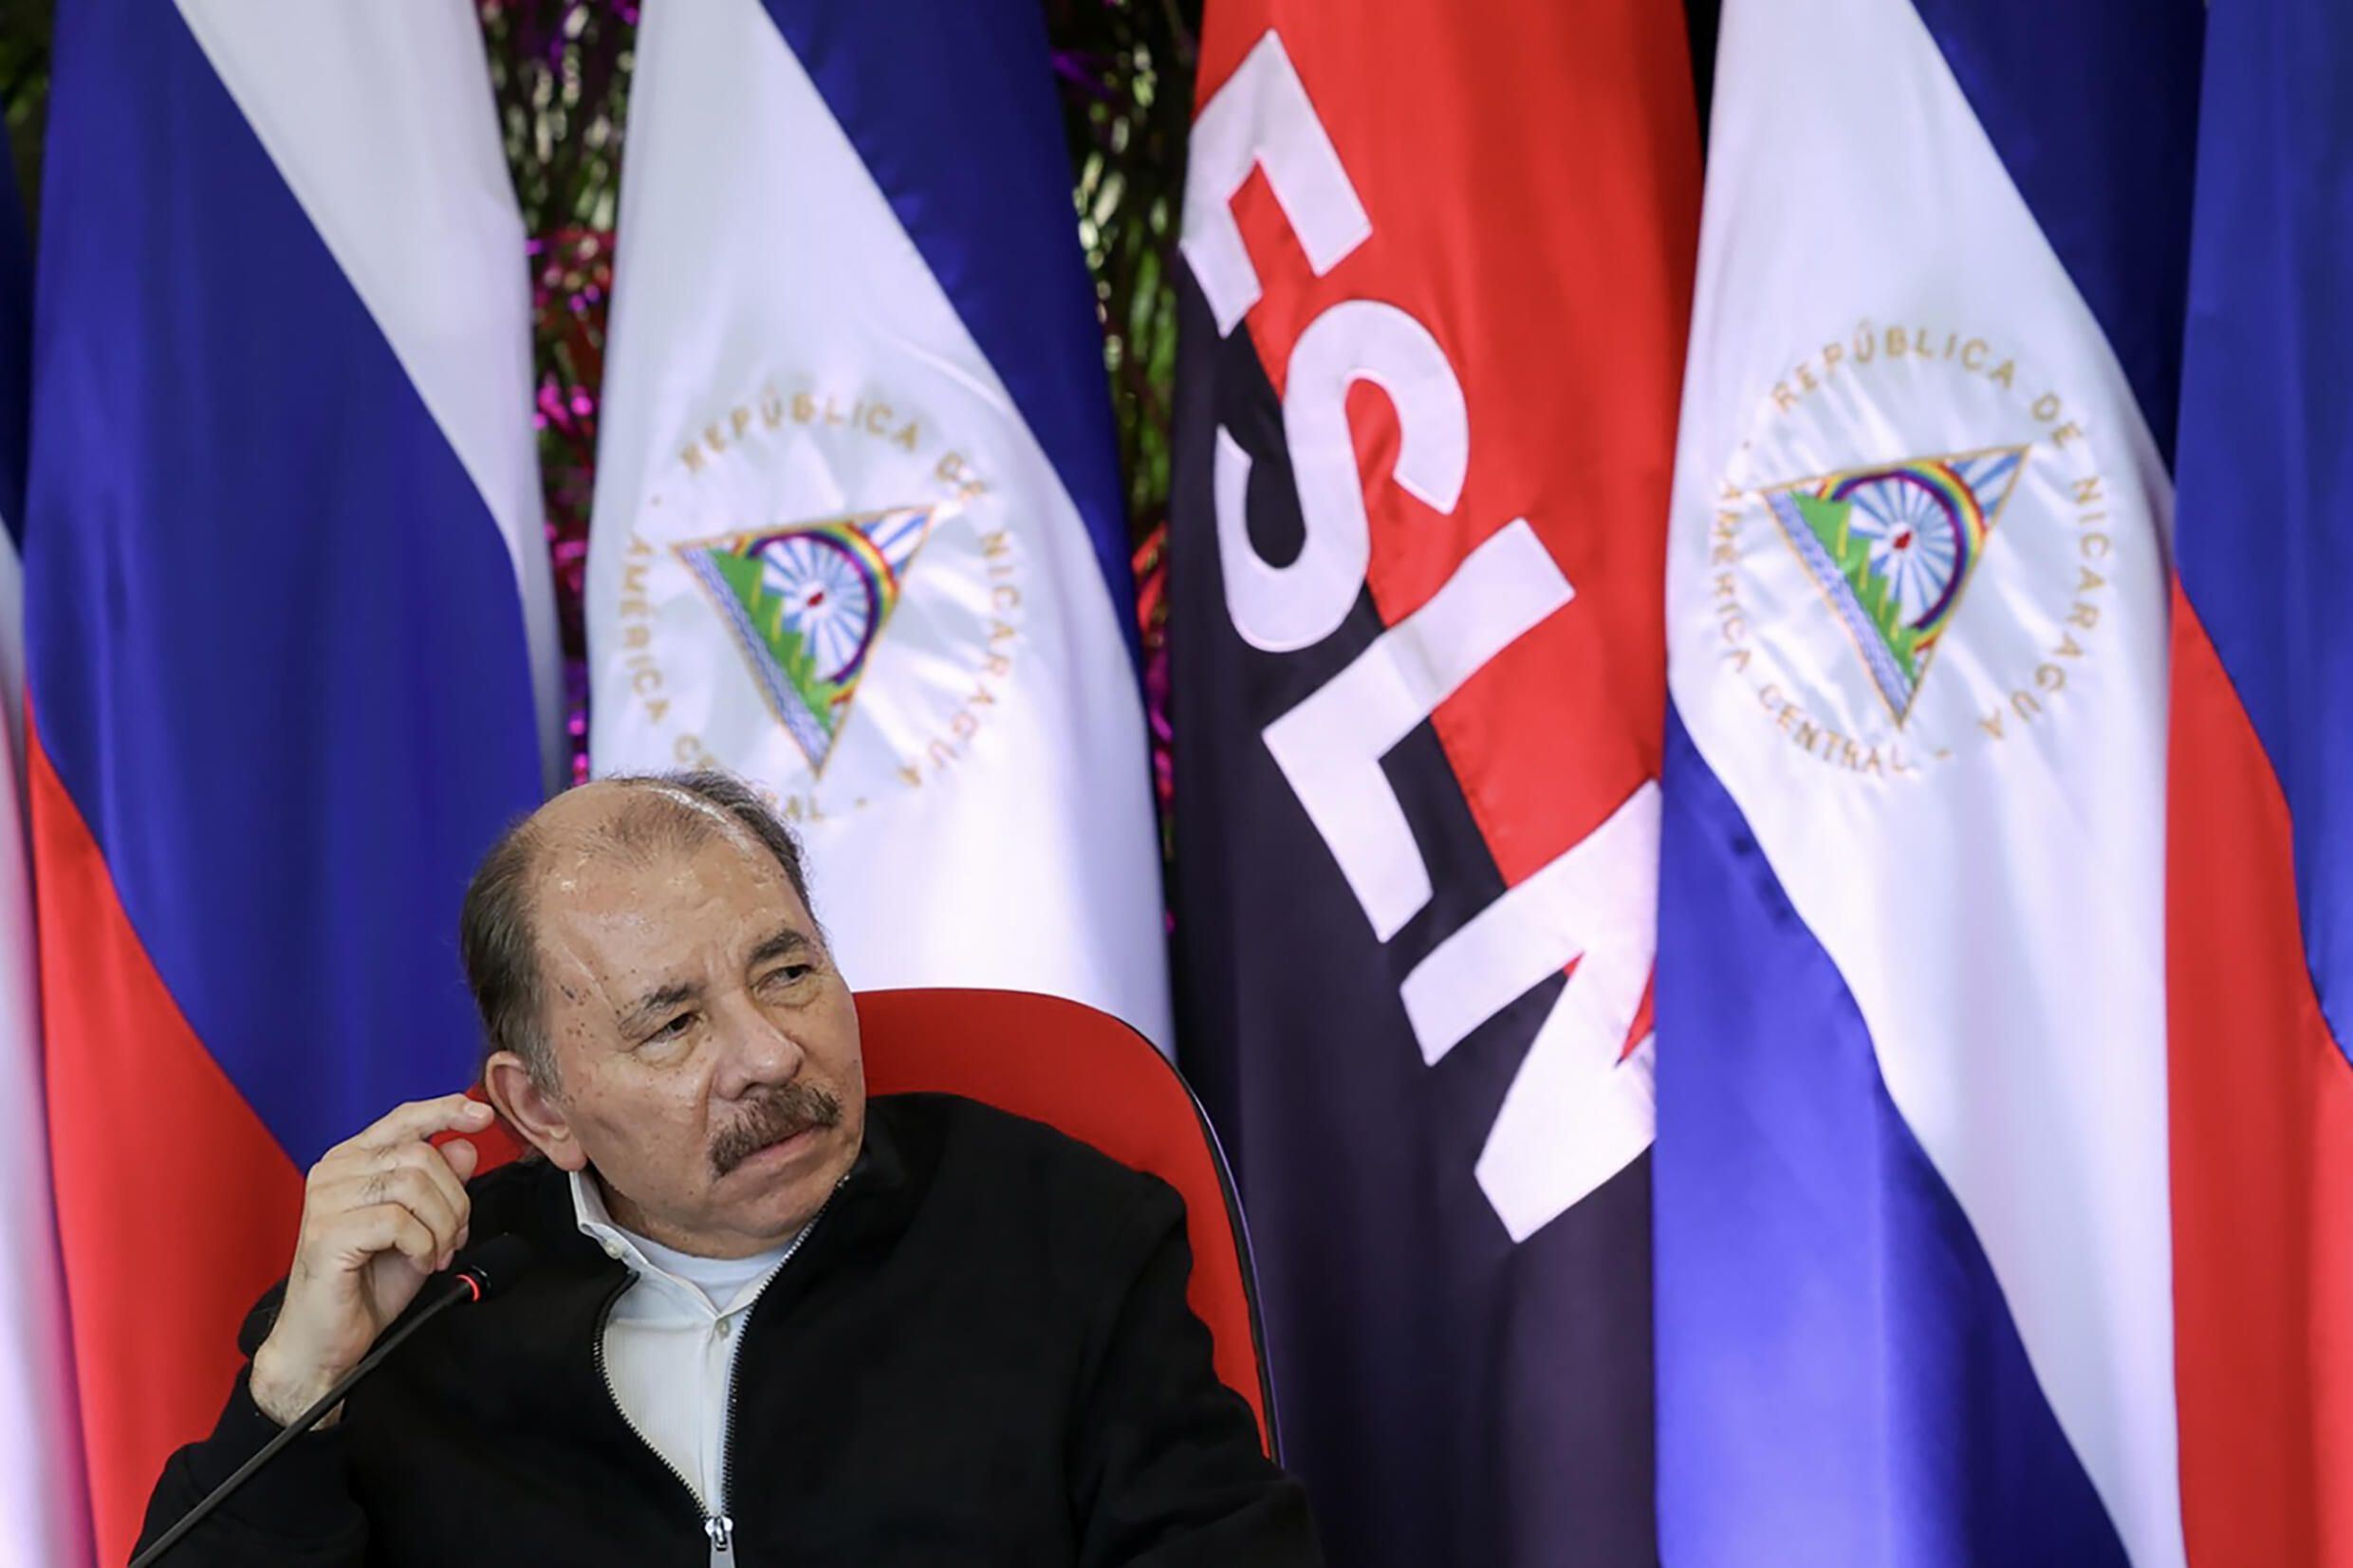 Daniel Ortega nombra asesor a exministro sancionado por Estados Unidos